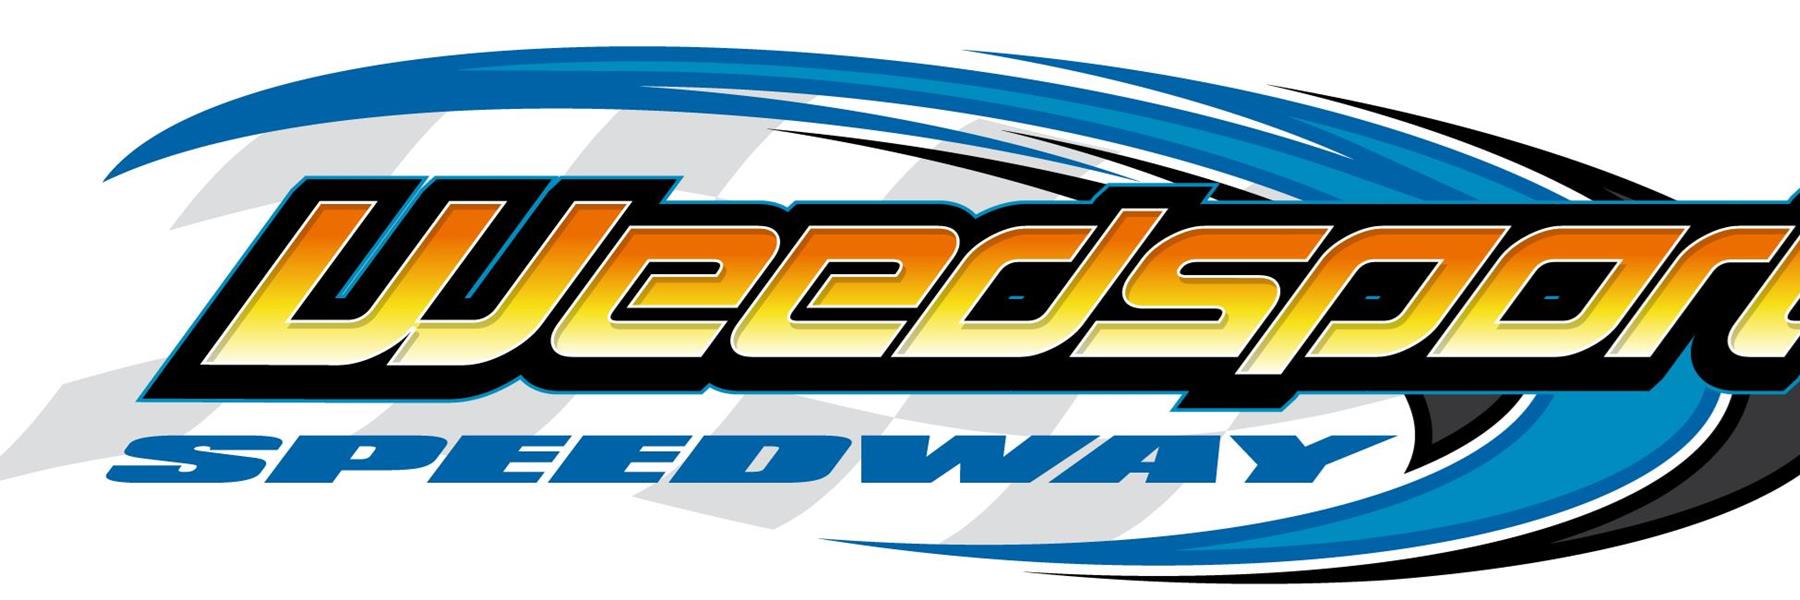 9/10/2022 - Weedsport Speedway 